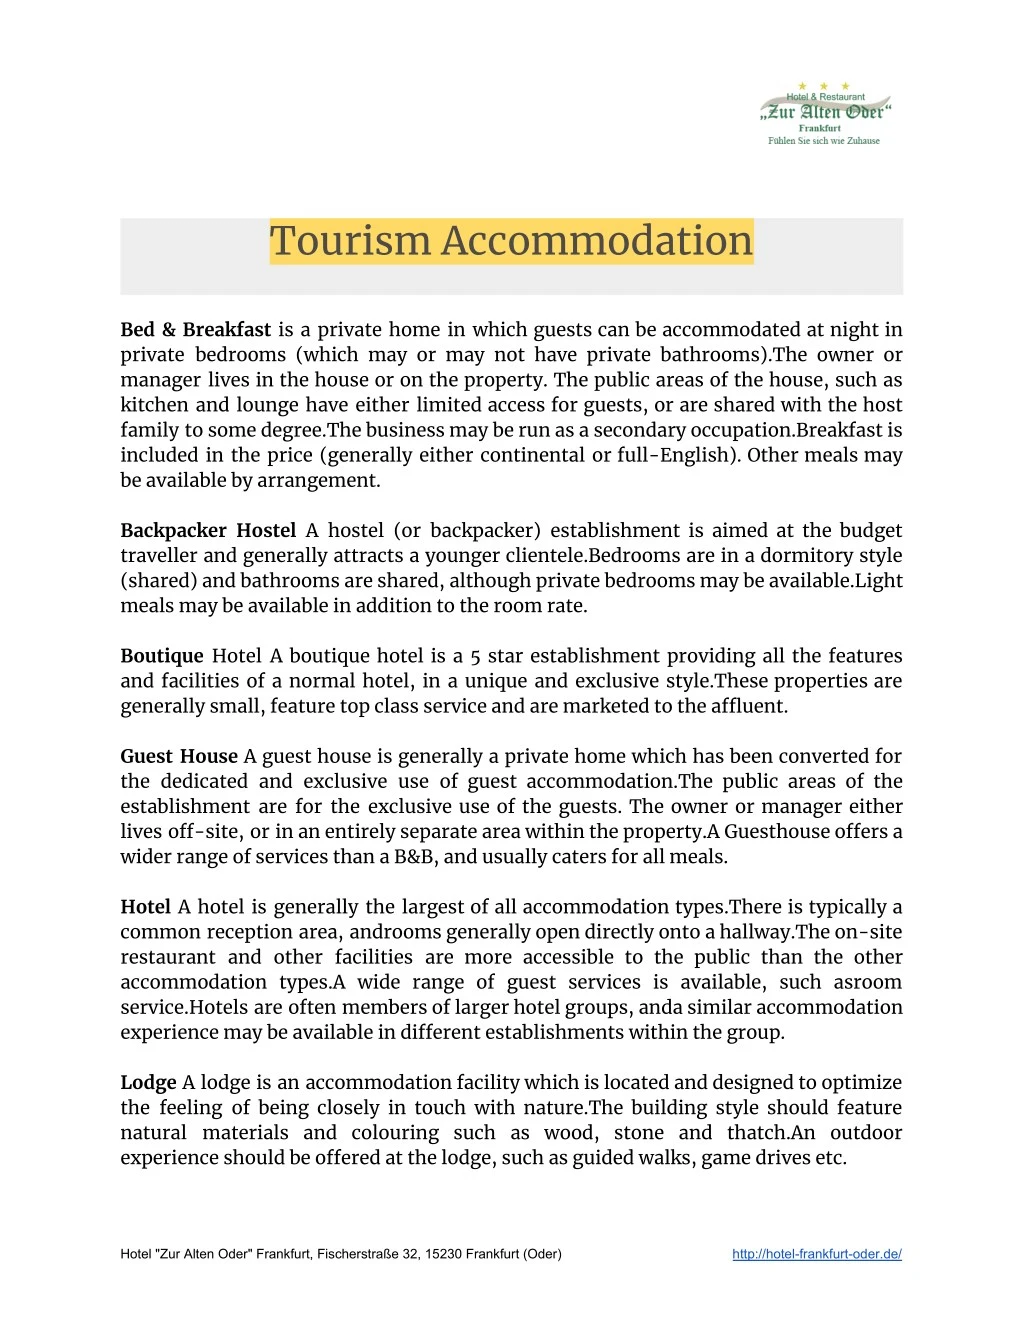 tourism accommodation